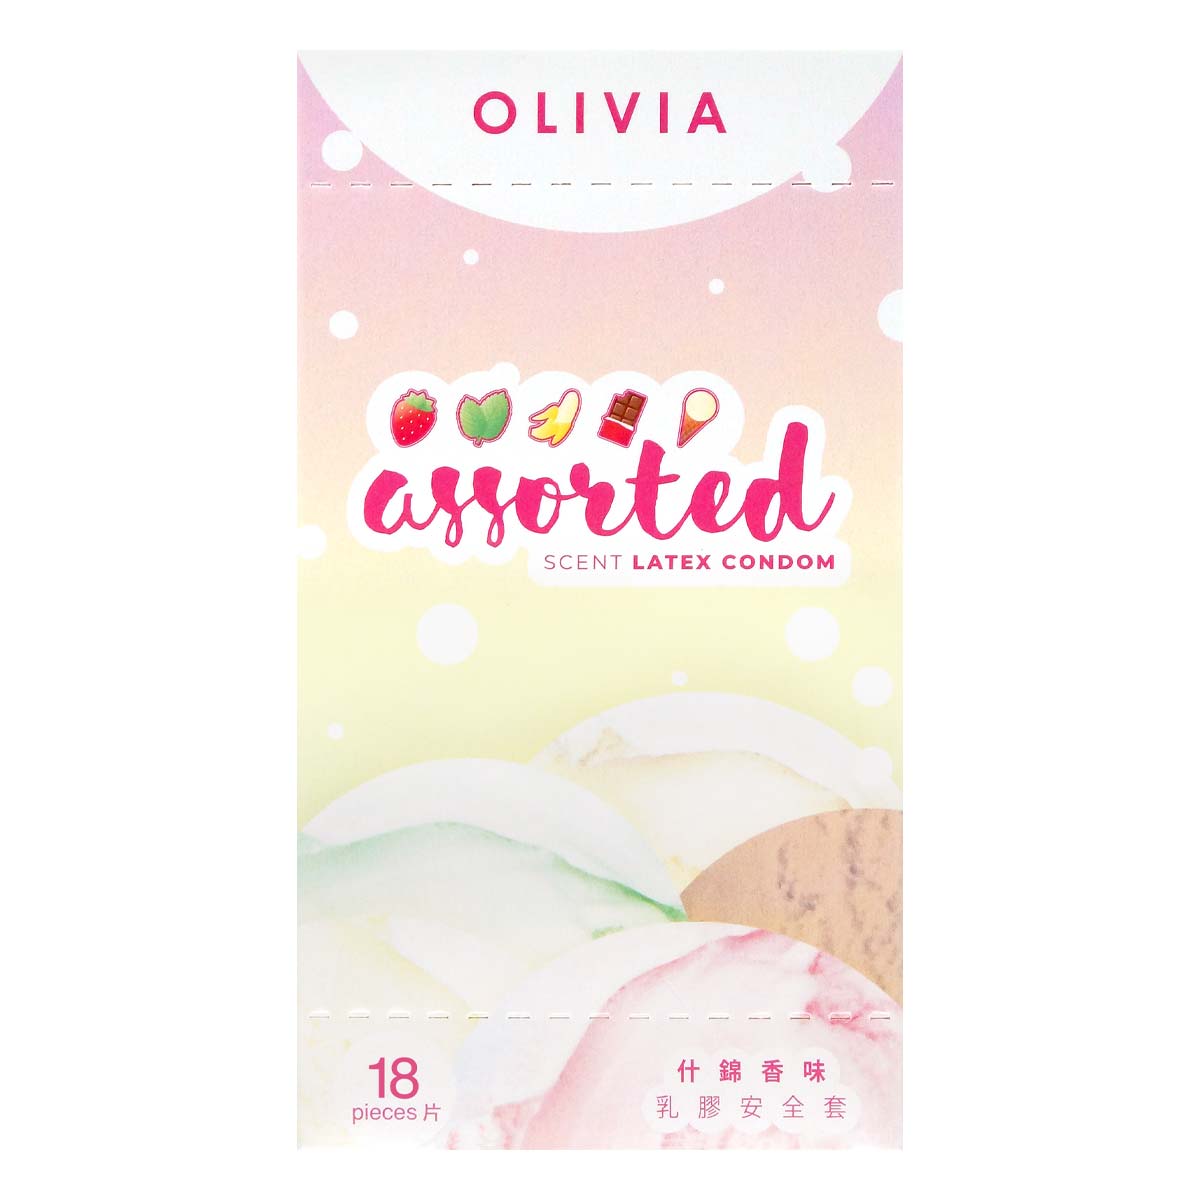 Olivia Assorted Scent Oral Condom 18's Pack Latex Condom-p_2